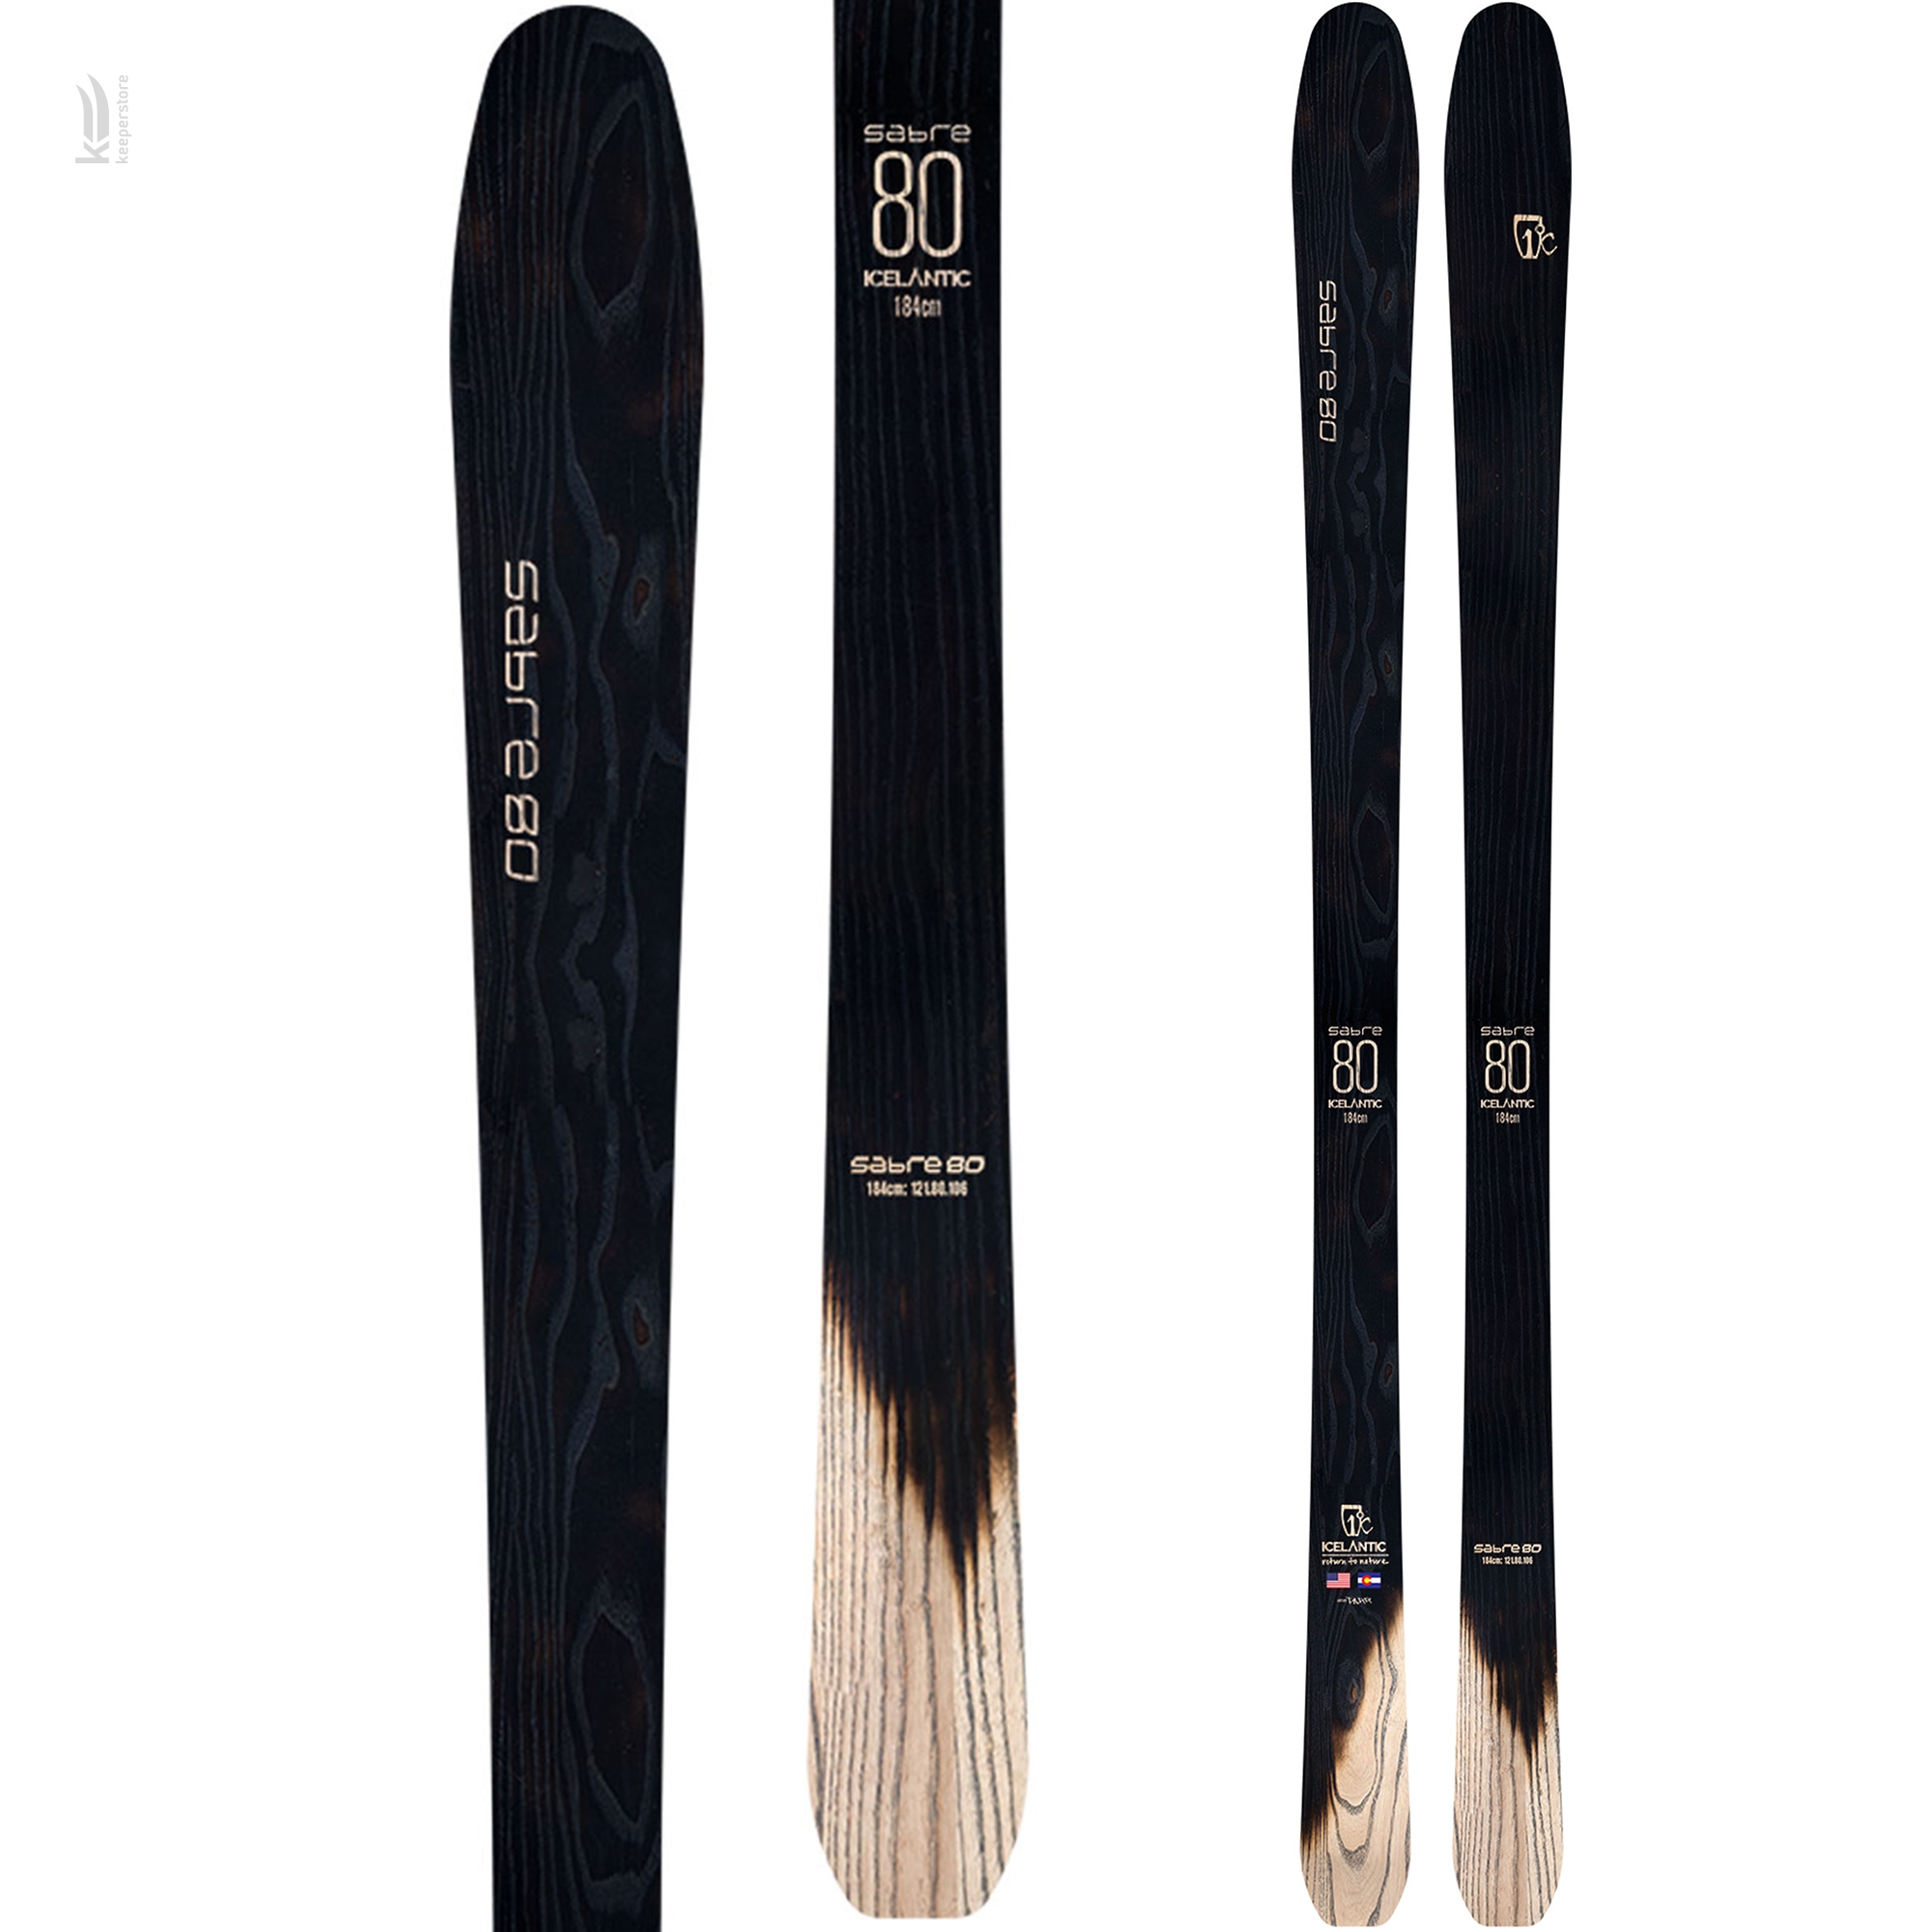 Горные лыжи Icelantic Sabre 80 2018/2019 174cm в интернет-магазине, главное фото